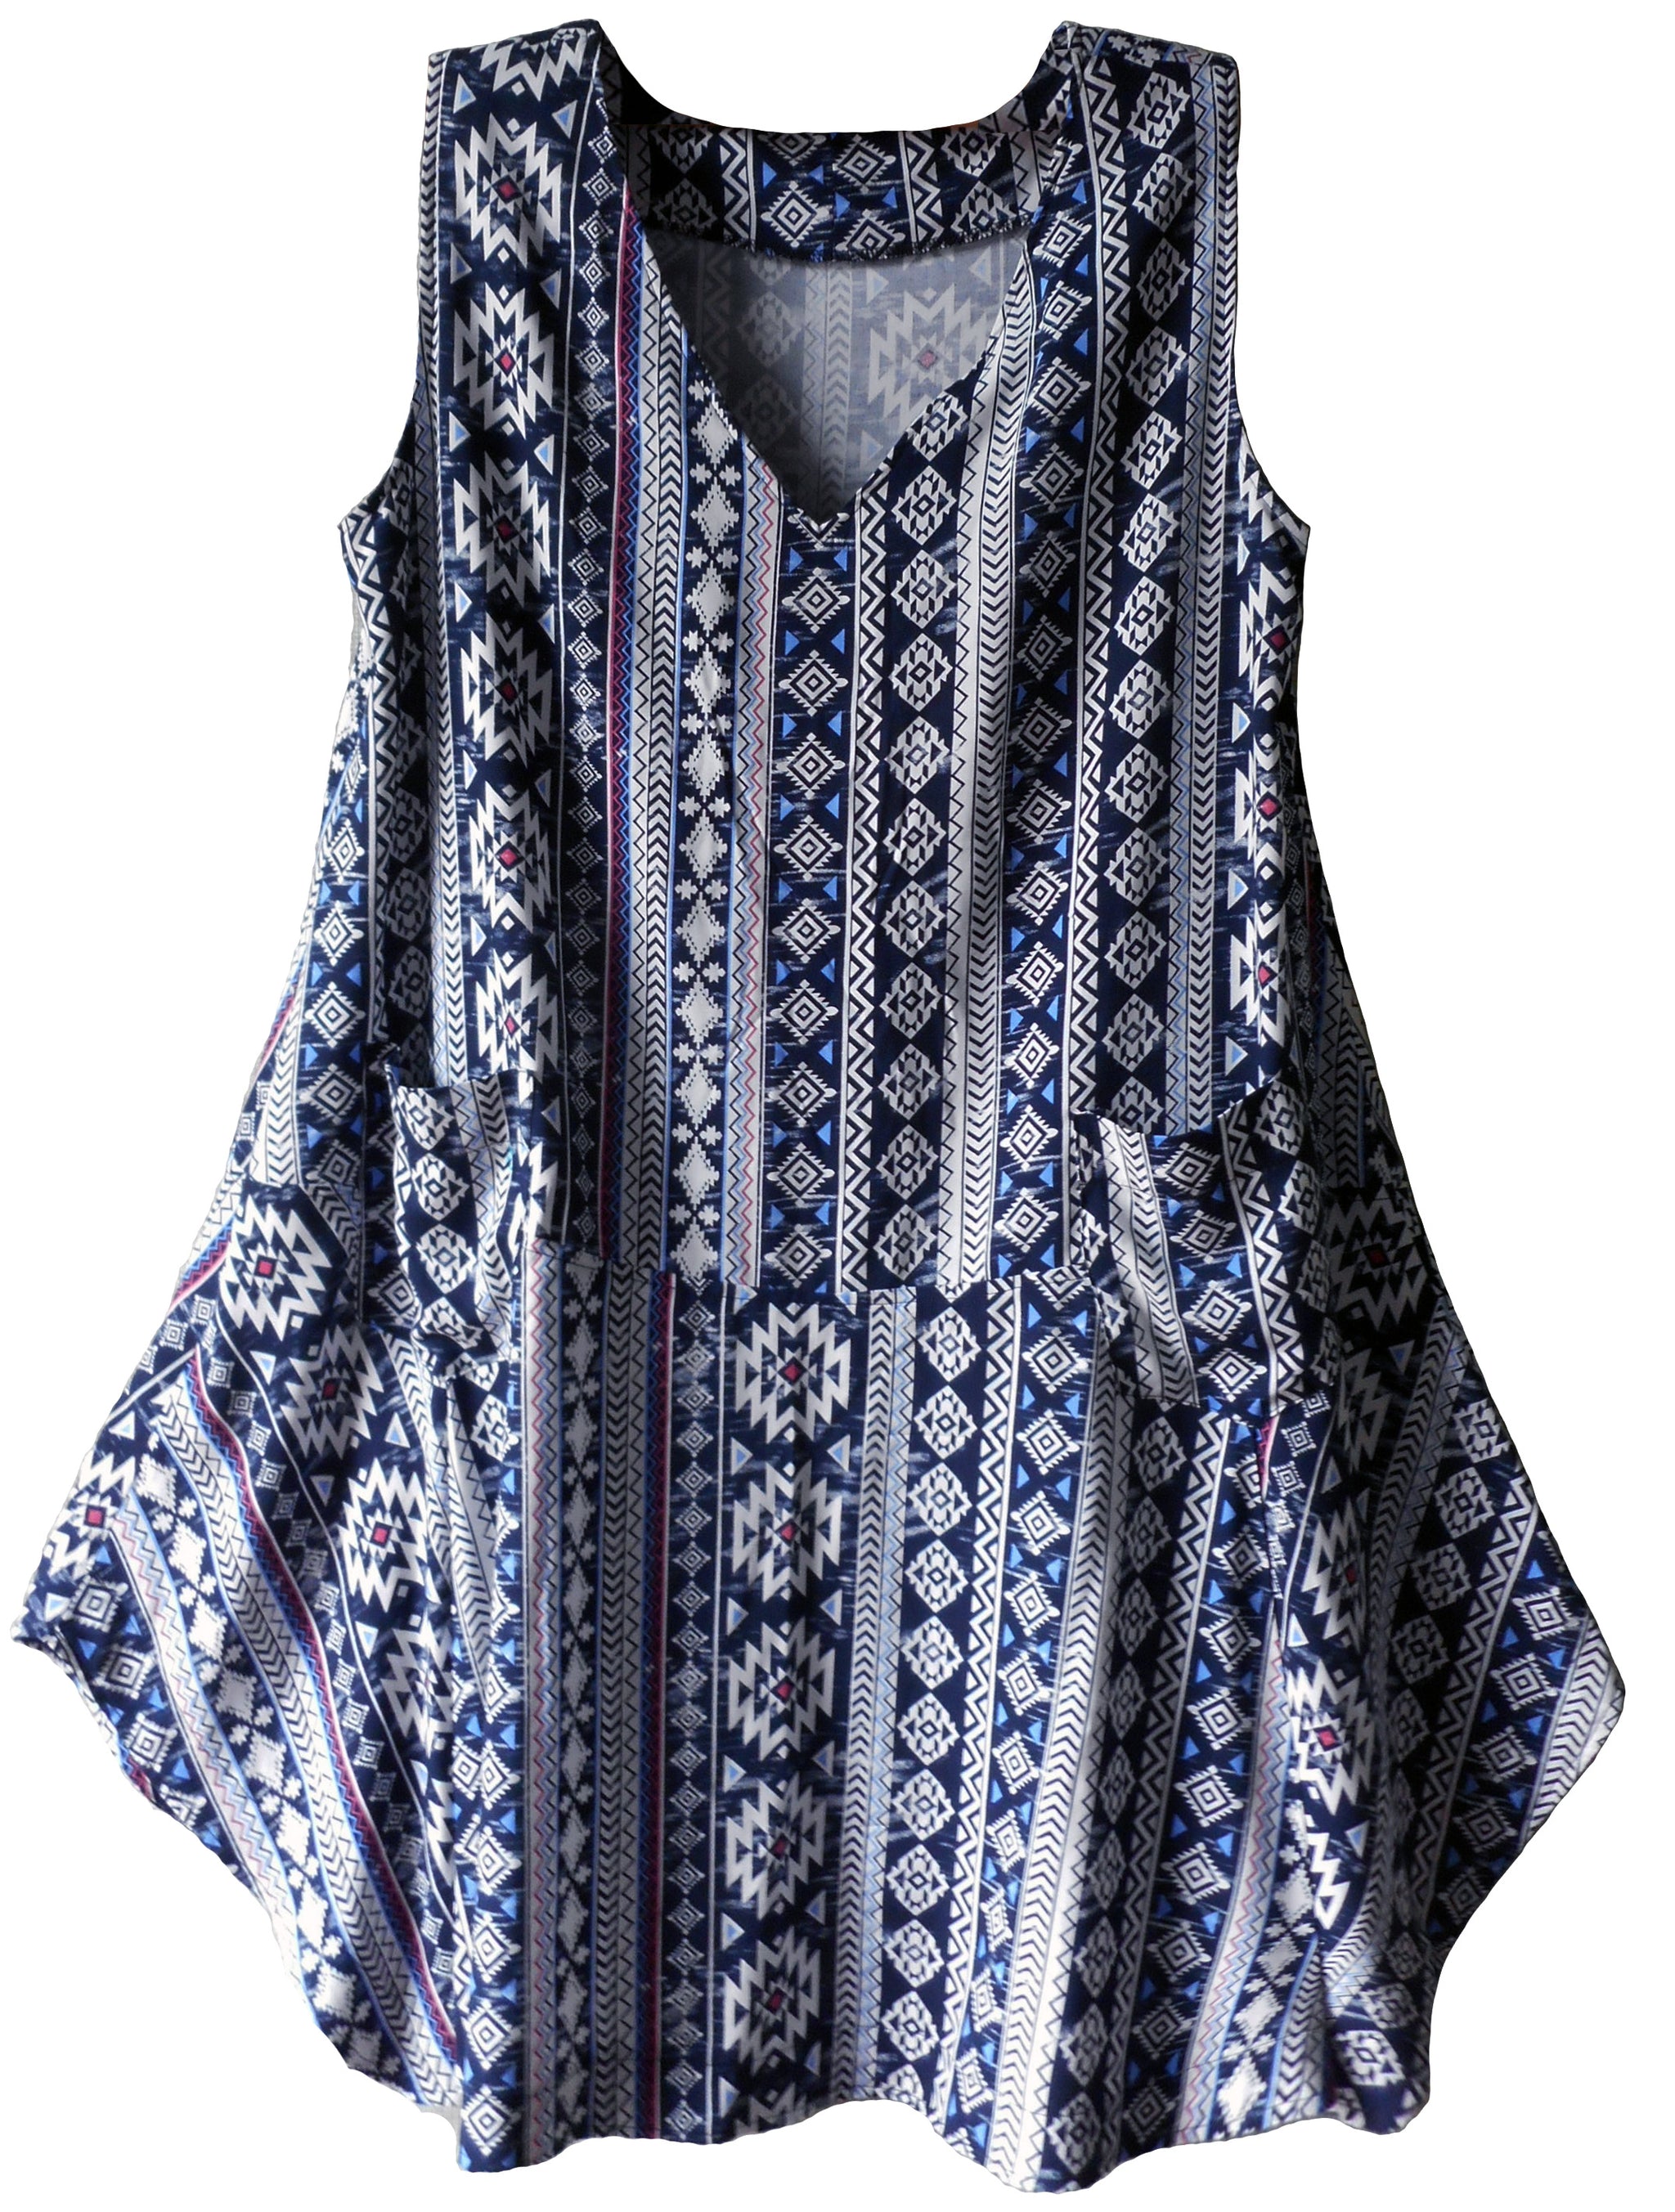 Theodora Tunic and Jacket, PDF Pattern, Large sizes – Boho Banjo art to ...